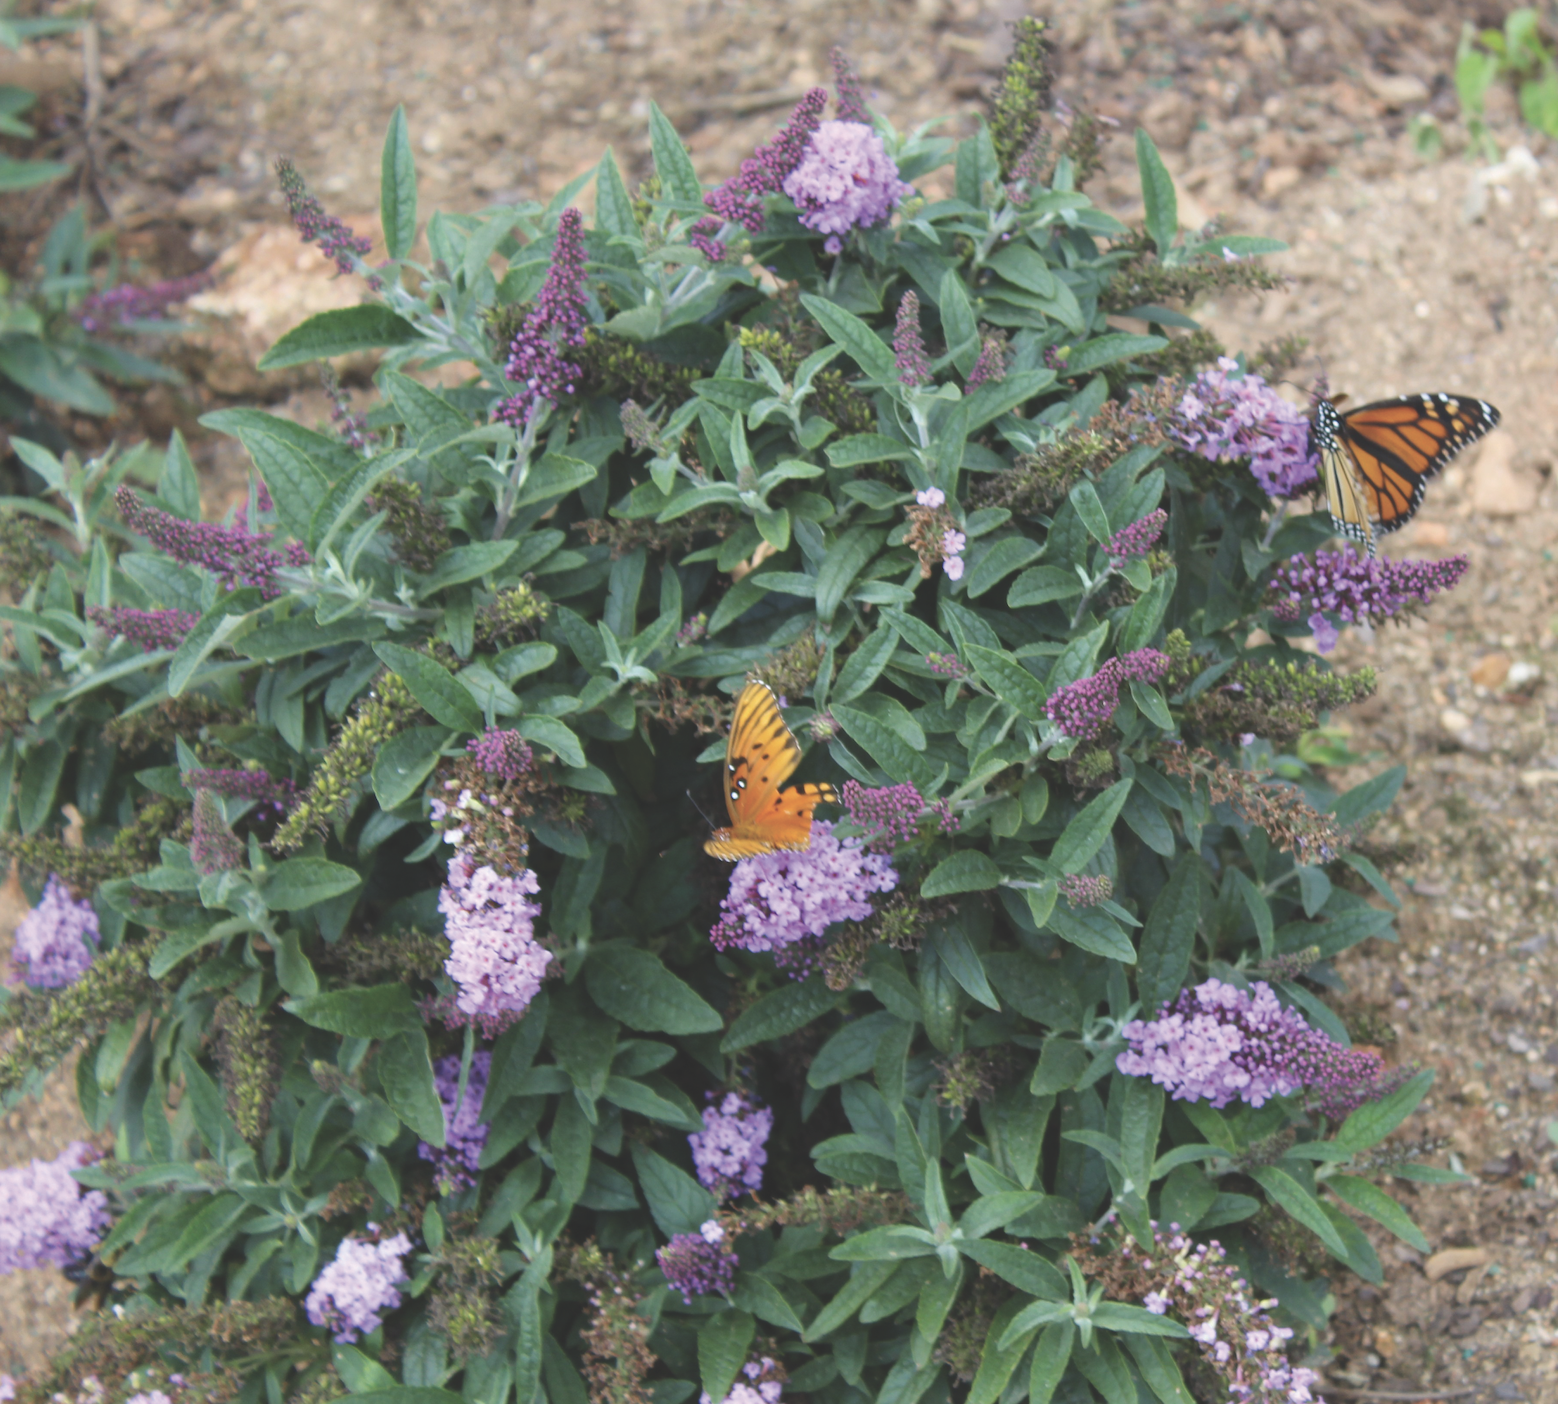 Butterflies on Buddleia